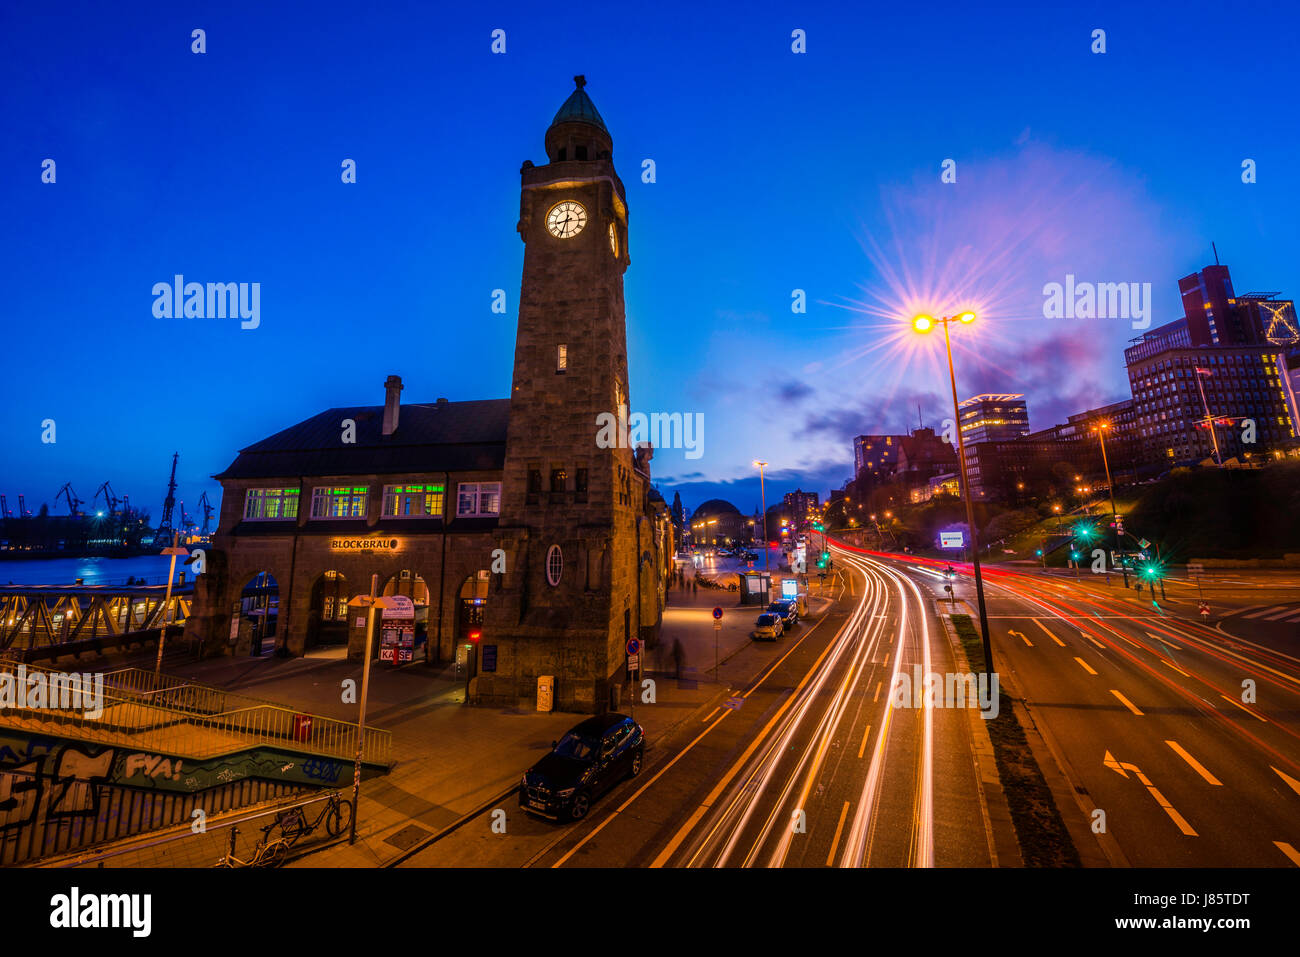 Uhrturm, Gauging Turm, St. Pauli Landung inszeniert mit Street, Nachtaufnahme, Landungsbrücken, Hafen, St. Pauli, Hamburg, Deutschland Stockfoto